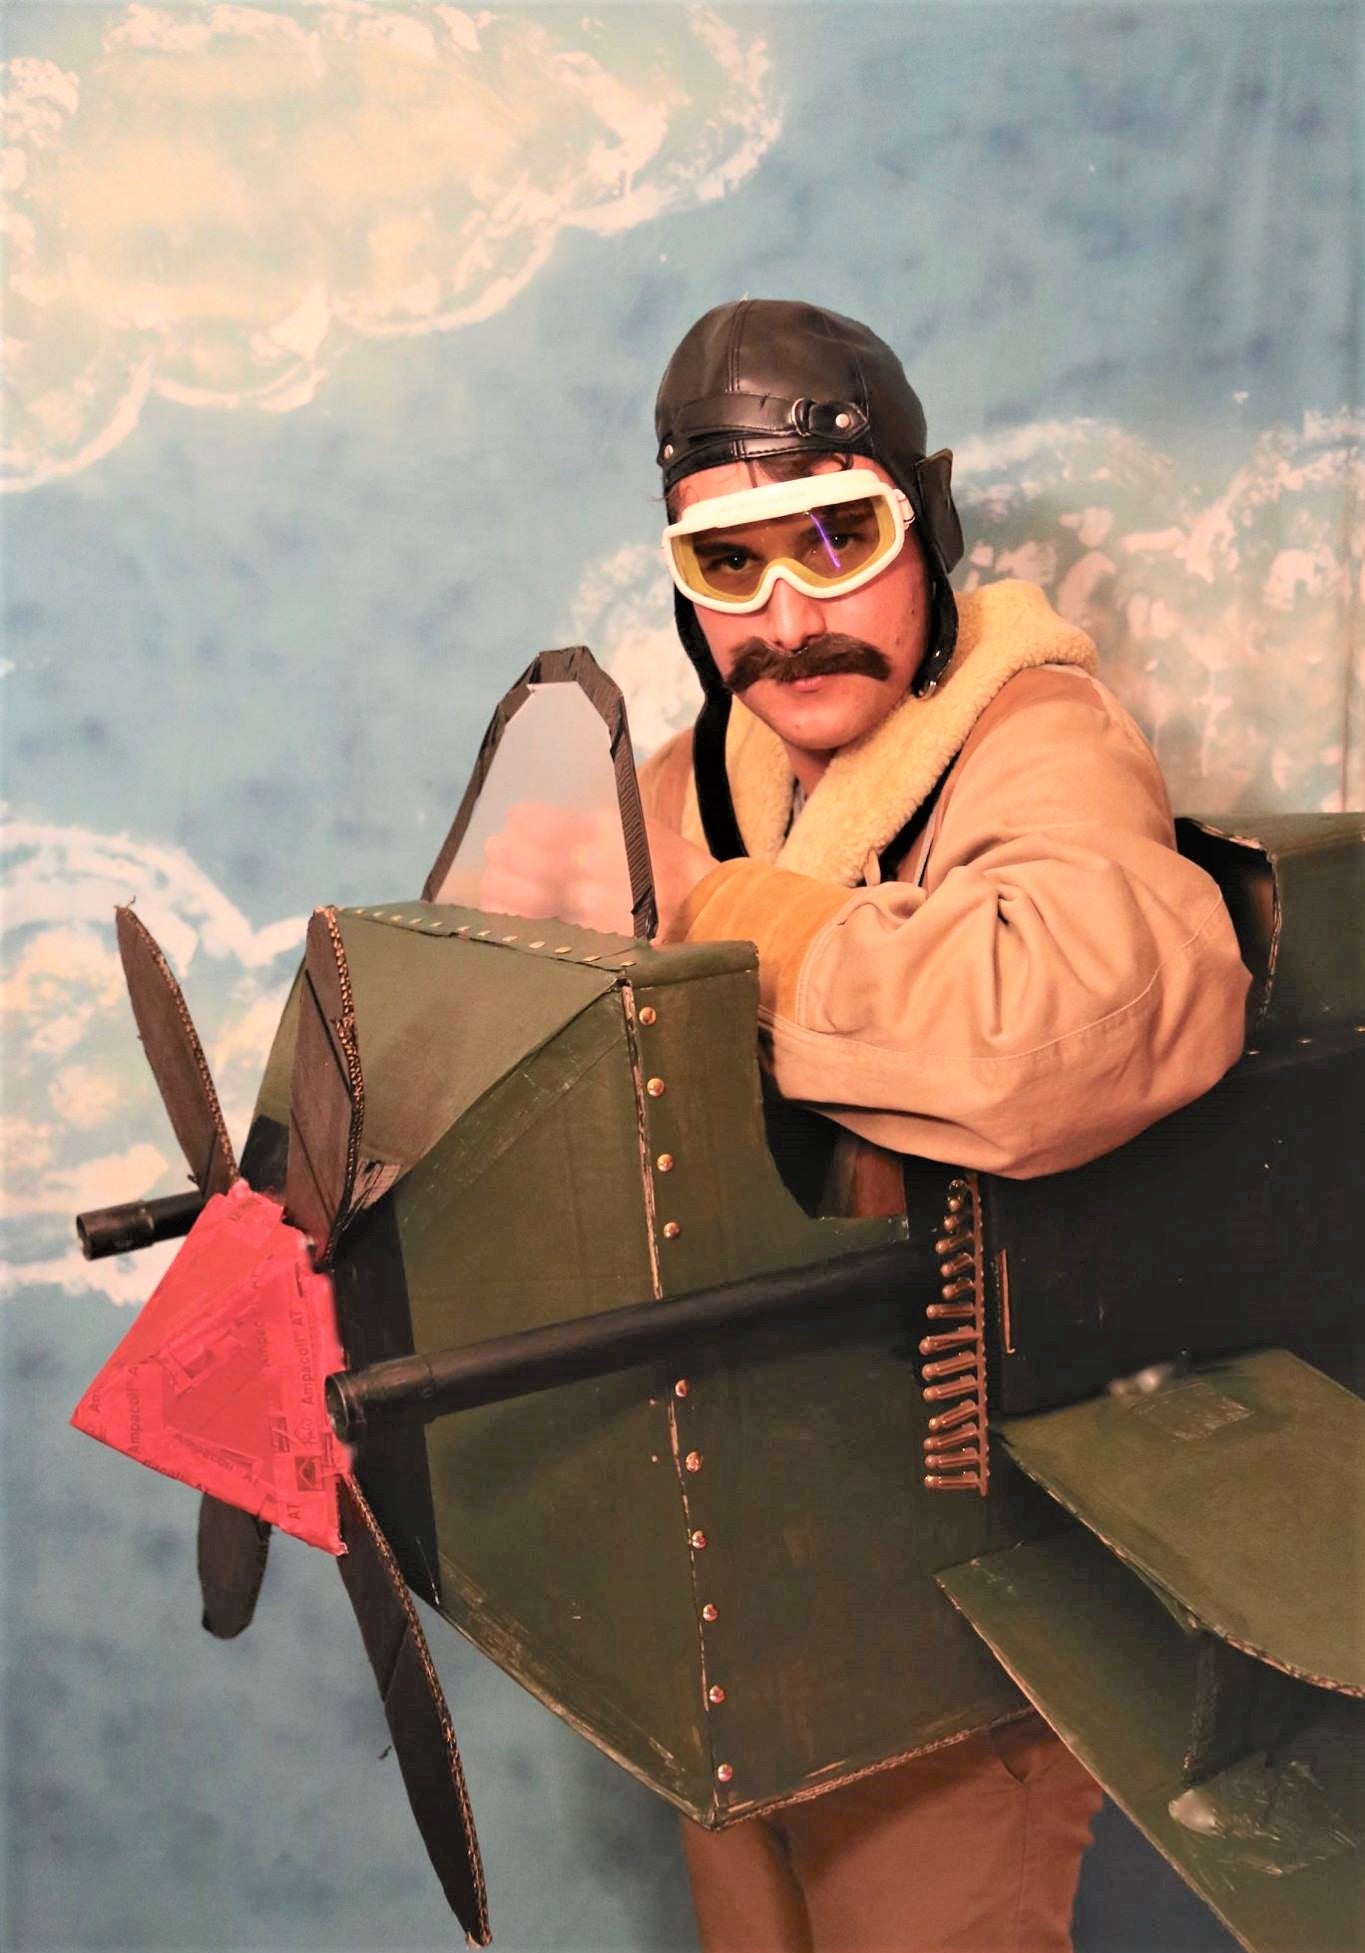 Un homme en déguisement d'avion en carton recyclé avec des mitraillettes et des lunettes sur un fond bleu à nuage